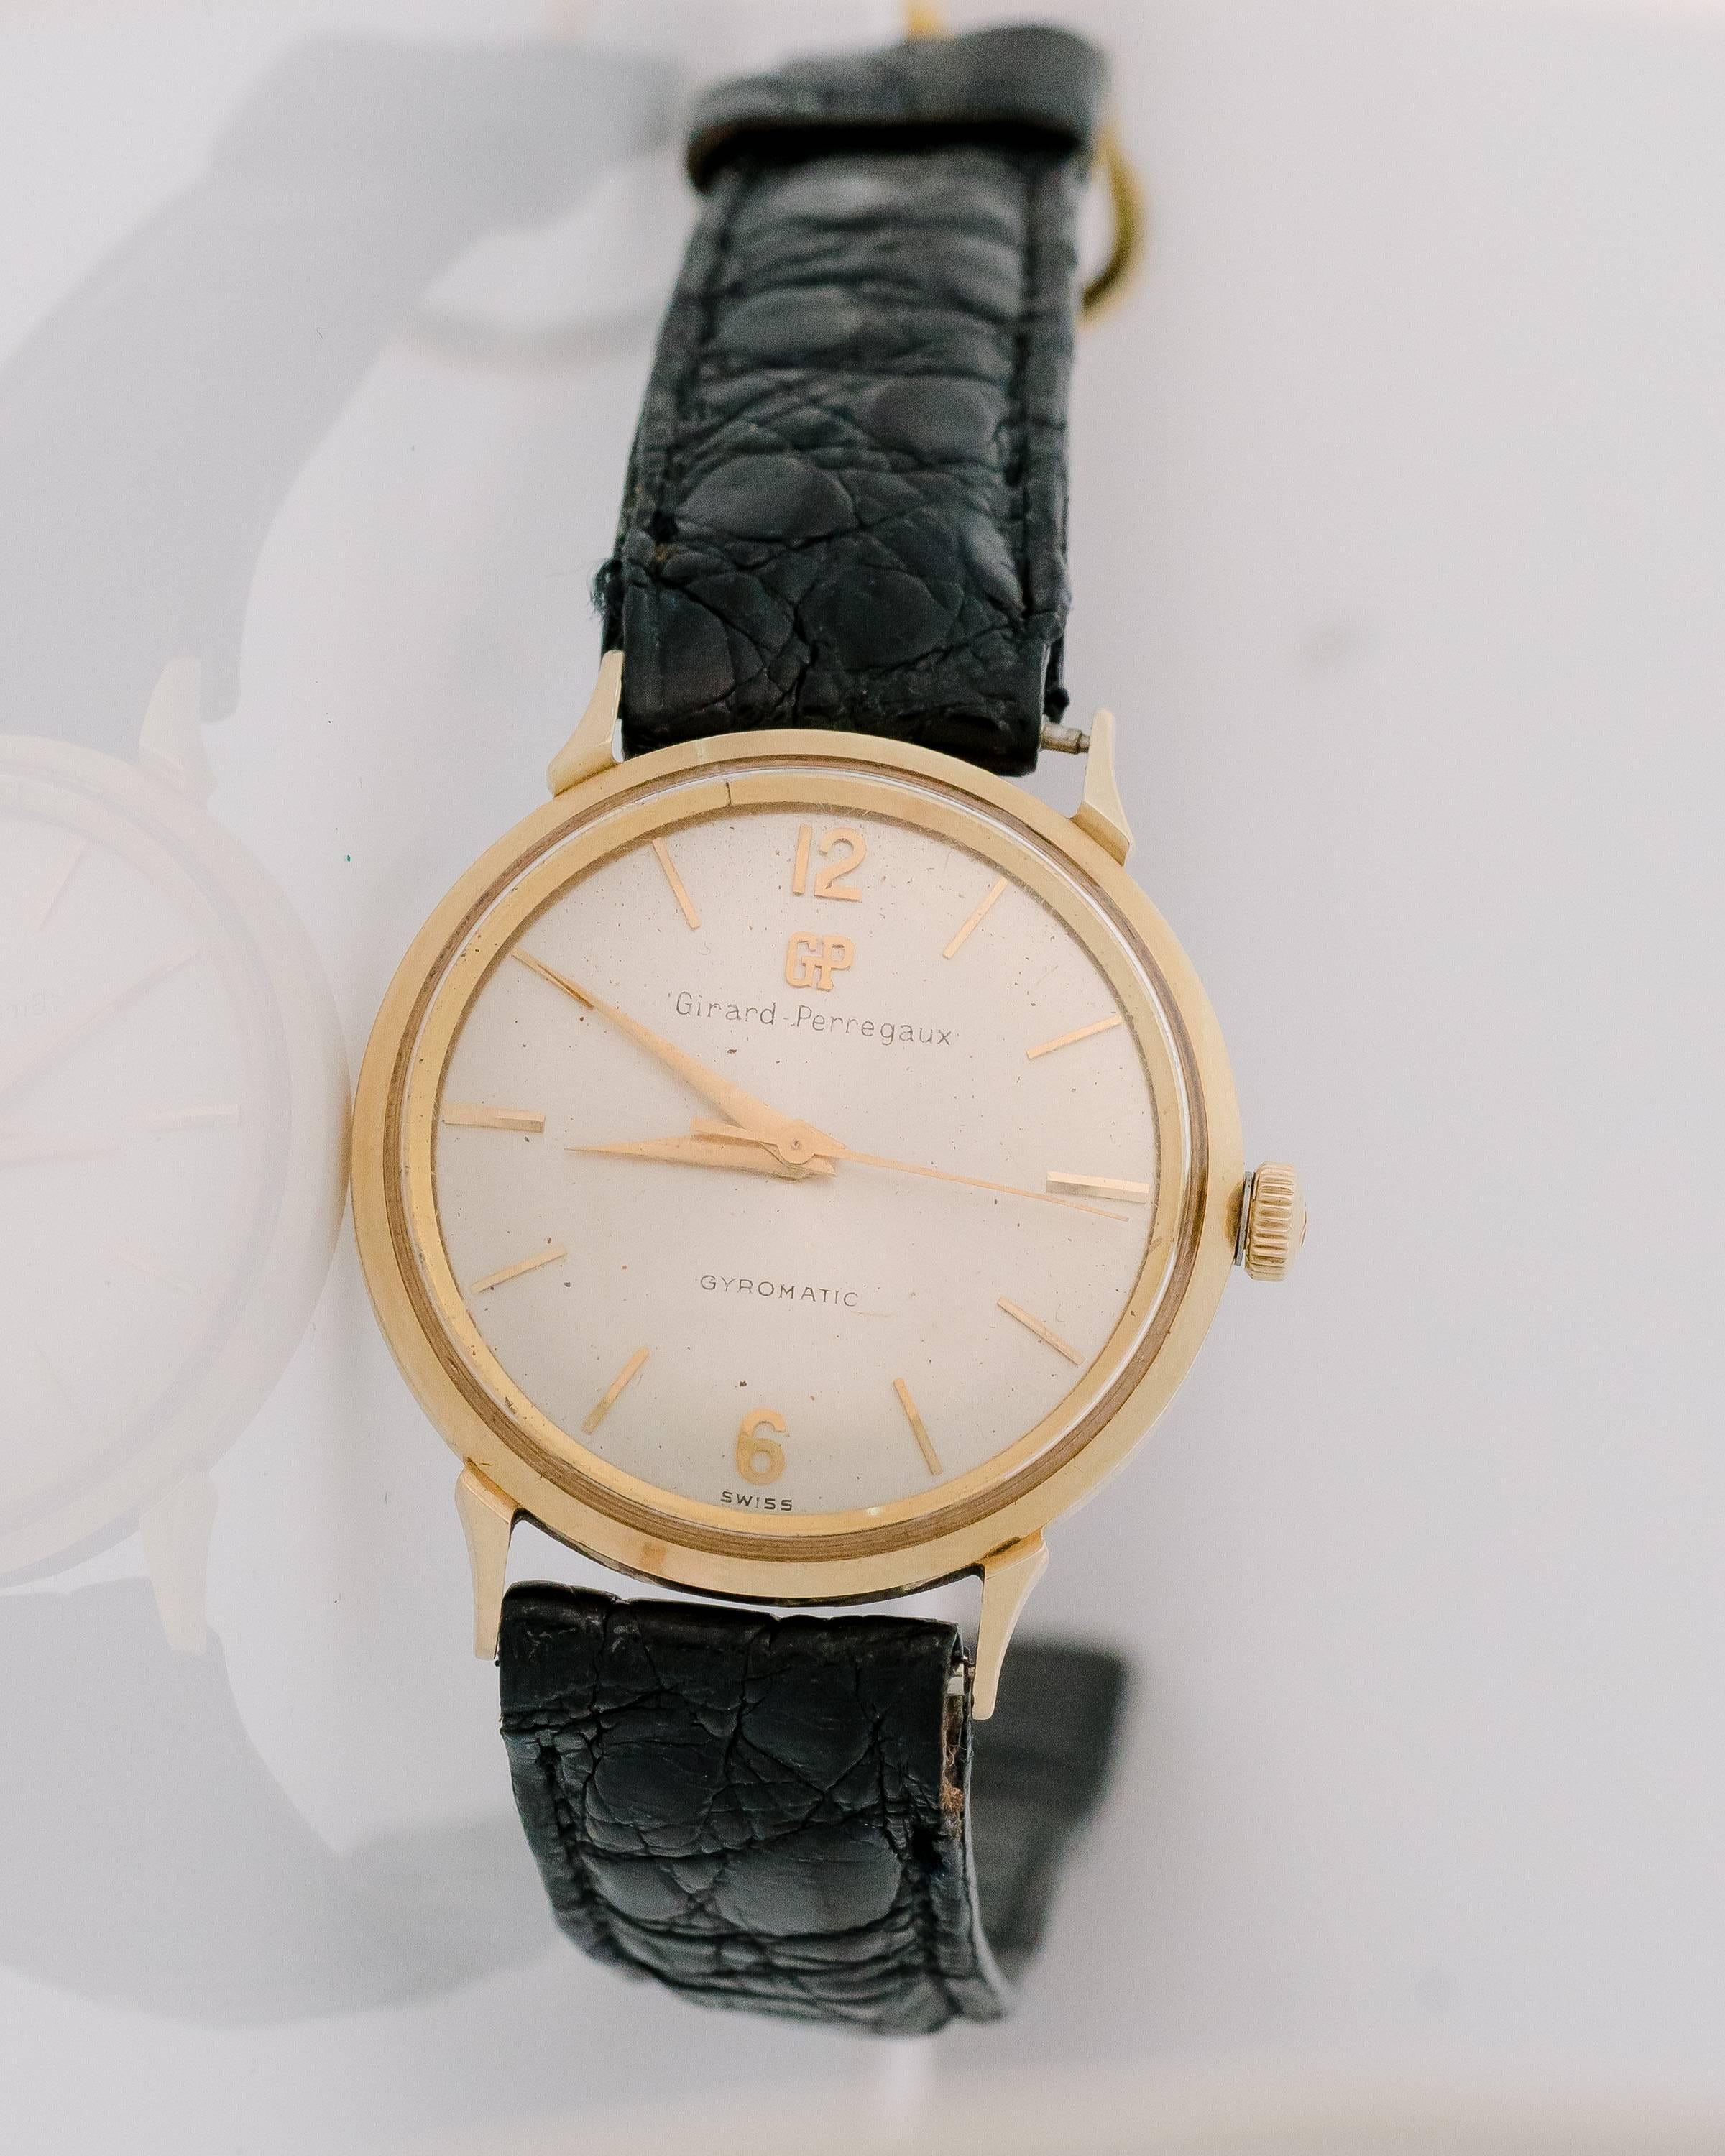 Cette montre-bracelet rétro Girard Perregaux Gyromatic en or jaune 14 carats des années 1950 présente un look classique adapté à une utilisation quotidienne. Elle possède la couronne d'origine qui est poinçonnée GP et un dos bulle très désirable qui